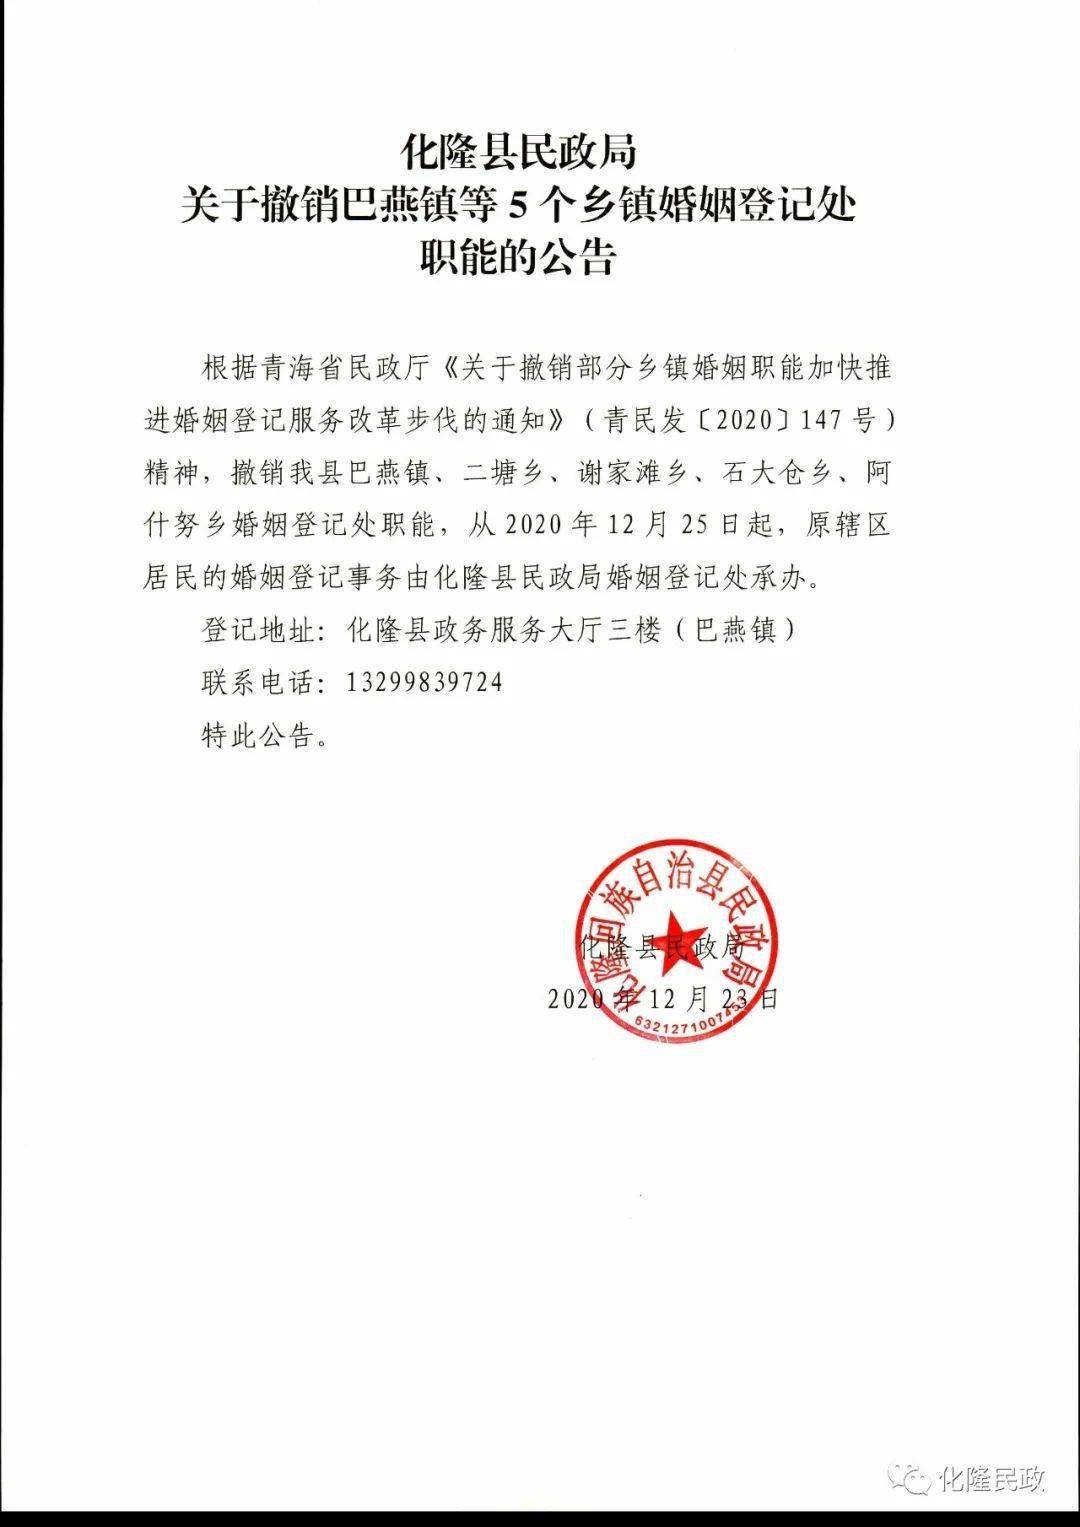 化隆县民政局关于撤销巴燕镇等5个乡镇婚姻登记处职能的公告